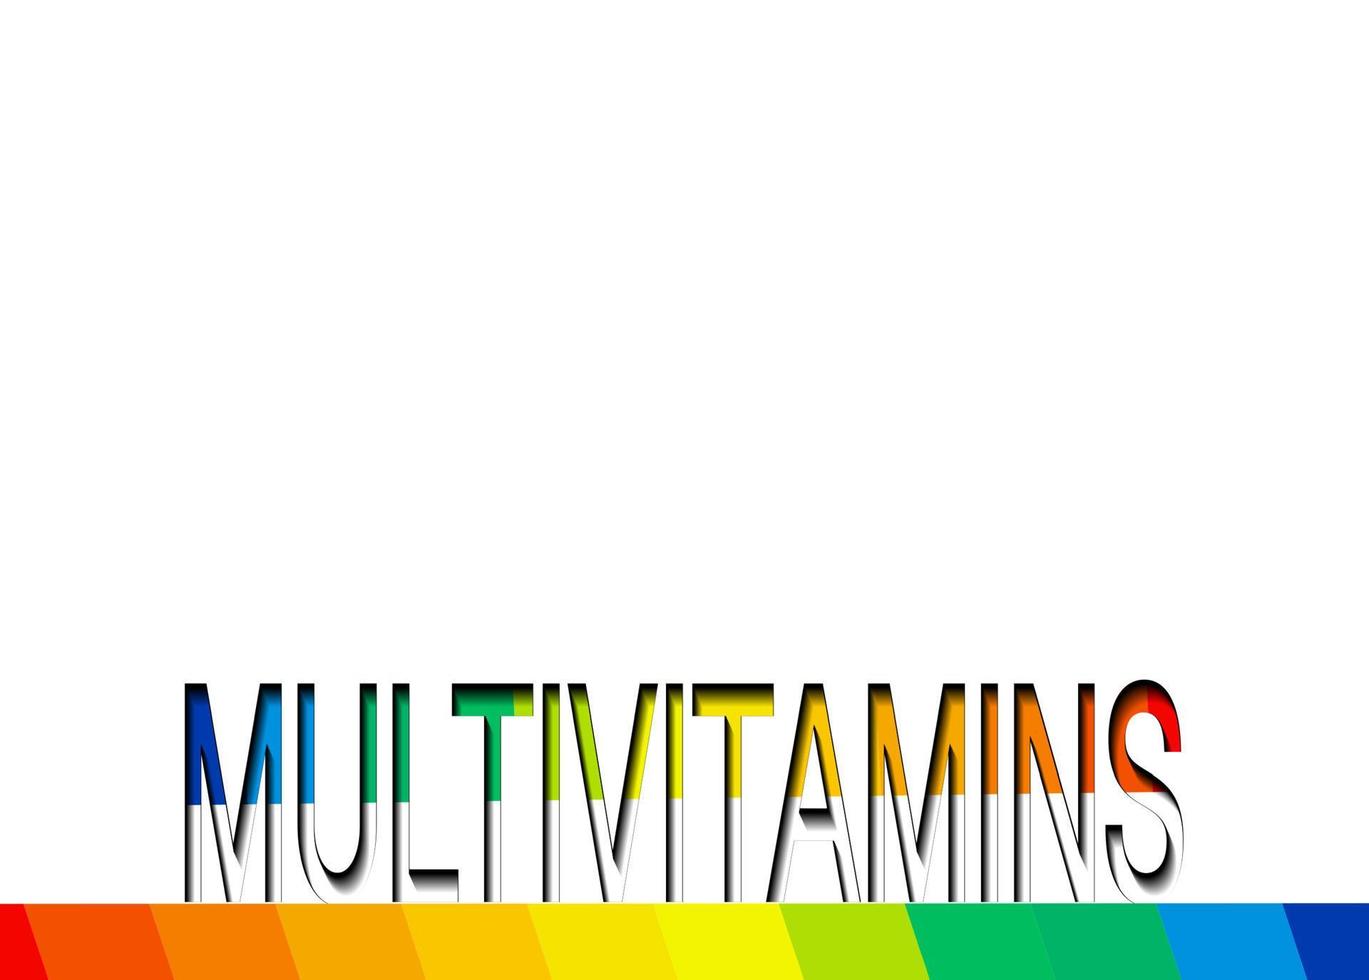 inspiración de etiquetas multivitamínicas, icono de vitaminas texto colorido, vector de banner aislado o fondo blanco